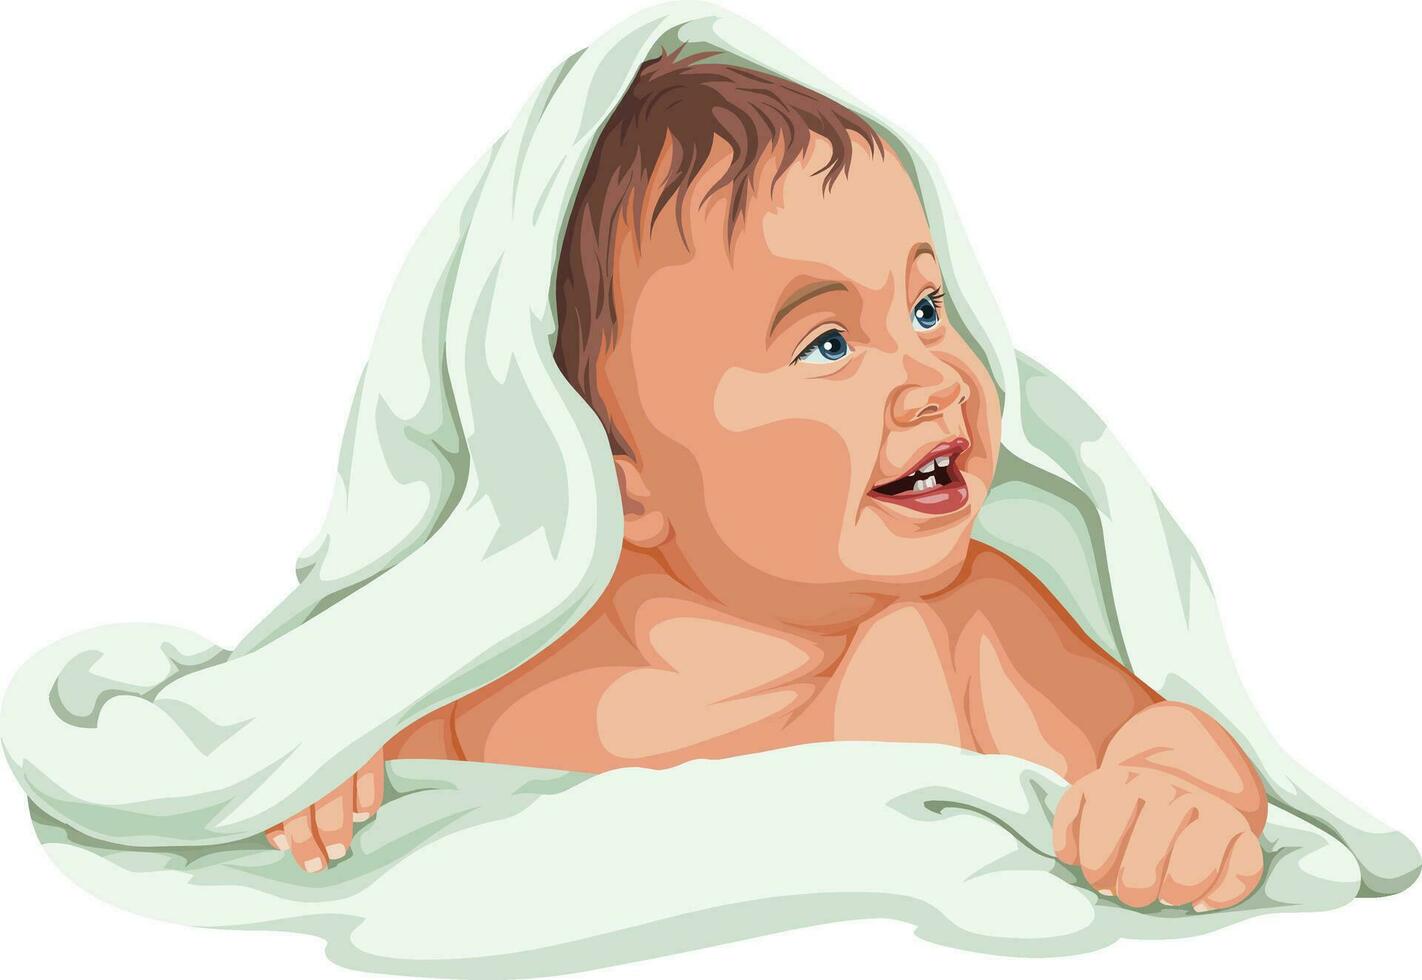 vetor do bebê Garoto coberto com toalha.